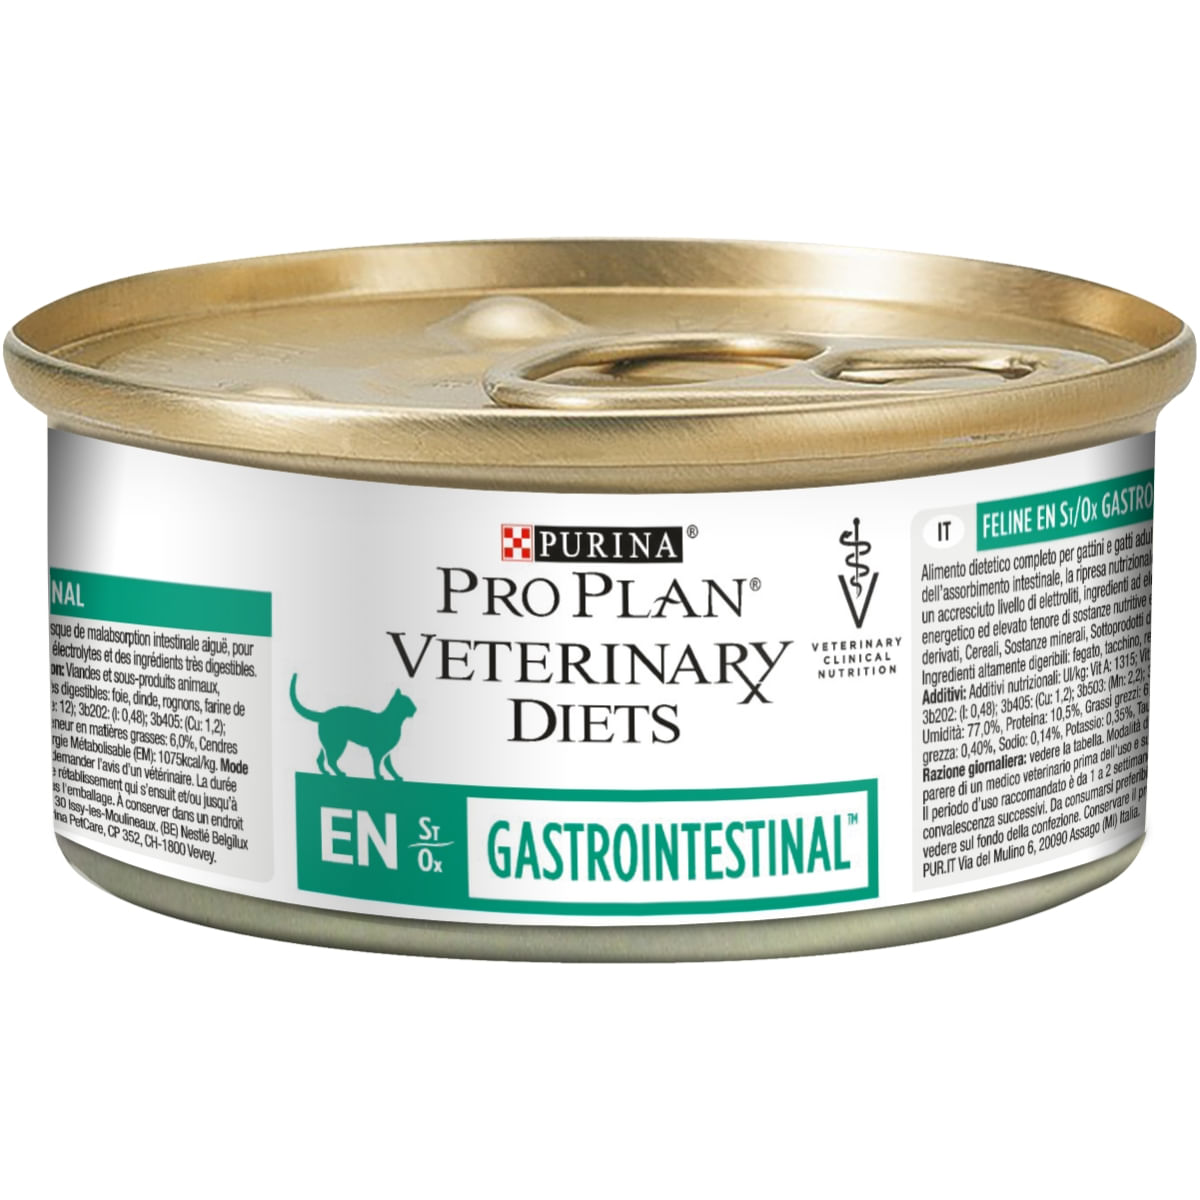 PURINA Pro Plan Veterinary Diets Gastrointestinal Mousse, dietă veterinară pisici, conservă hrană umedă, afecțiuni digestive, 195g (conserva)